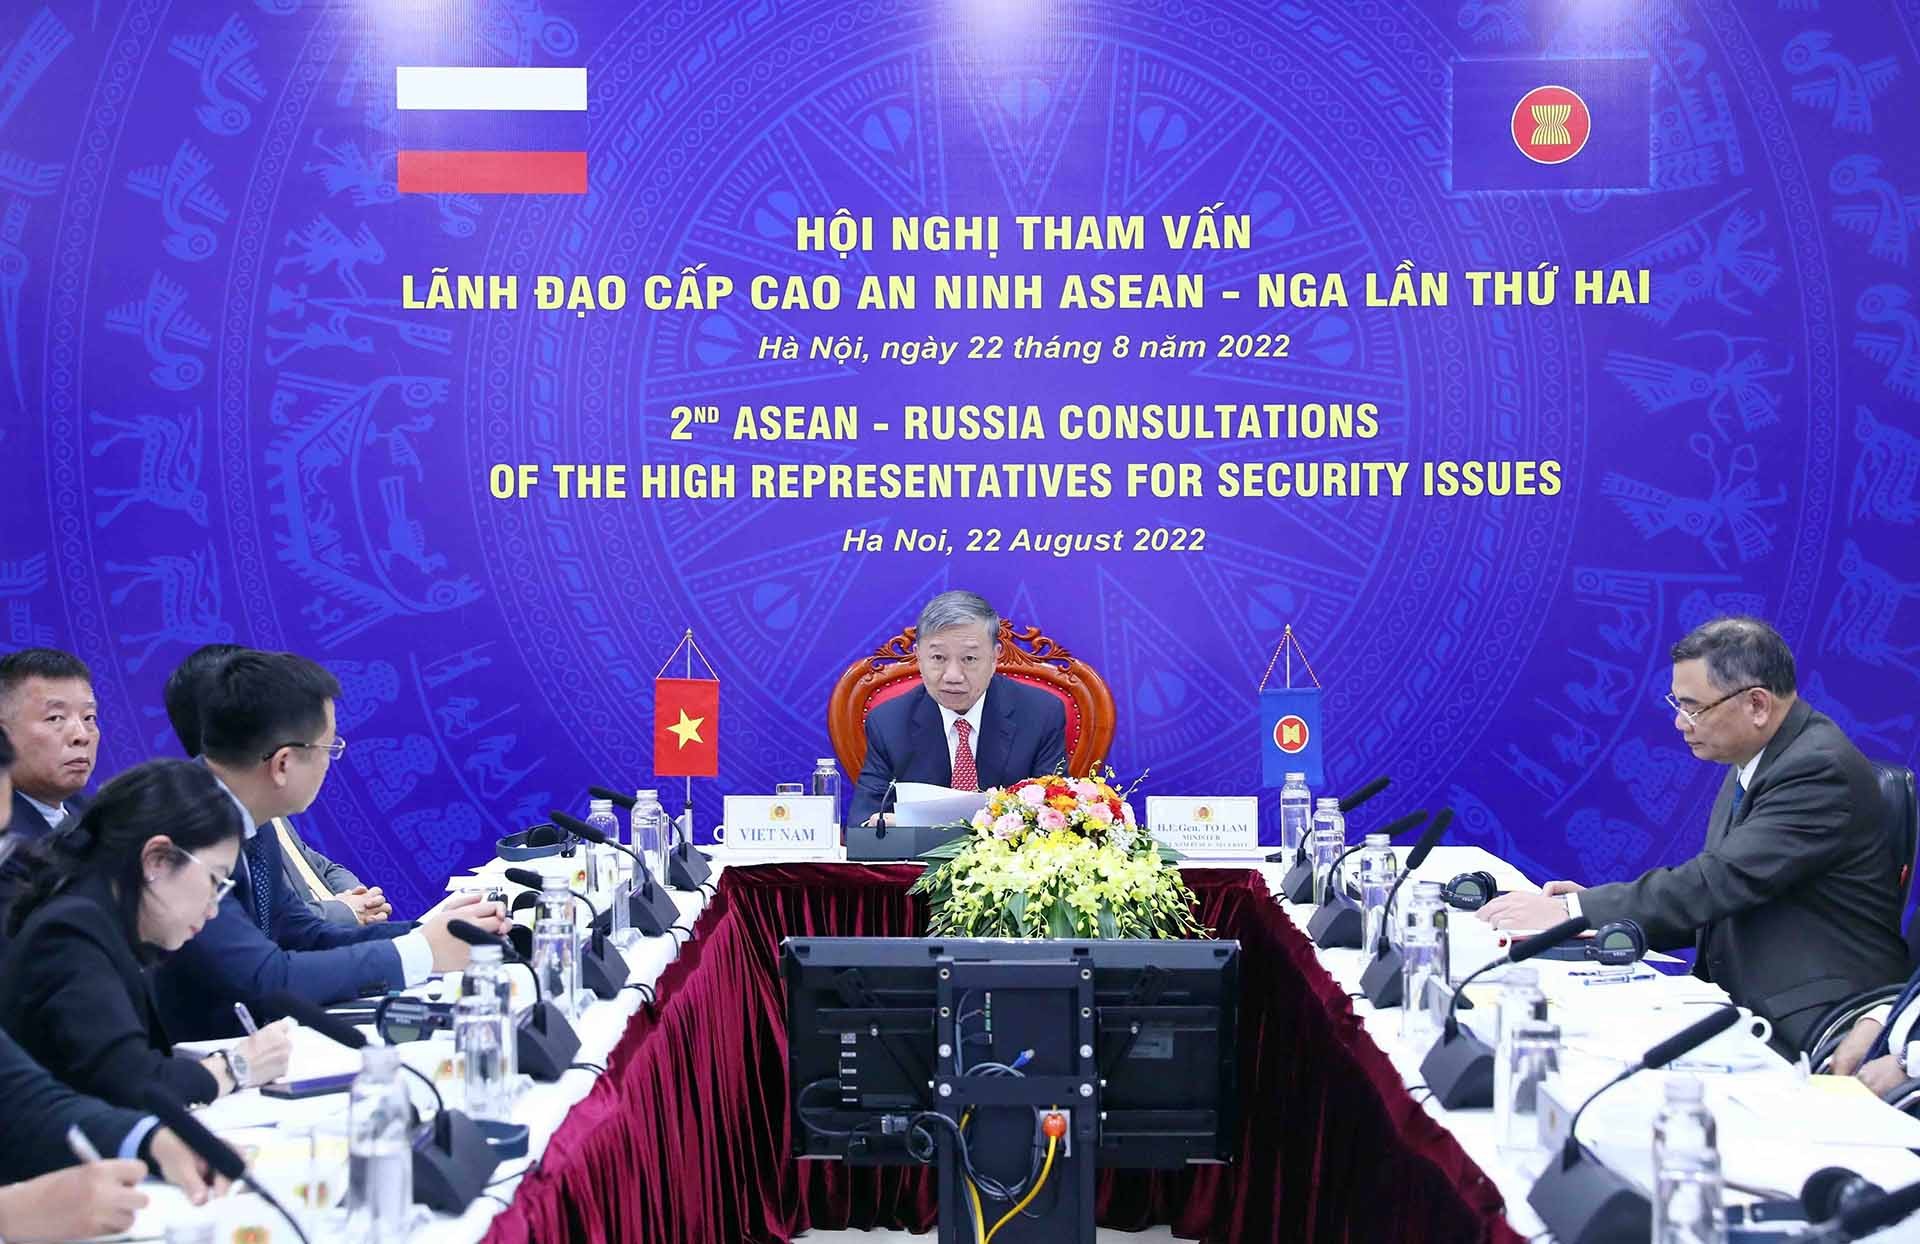 Đại tướng Tô Lâm, Bộ trưởng Bộ Công an dự Hội nghị tham vấn Lãnh đạo cấp cao an ninh ASEAN-Nga lần thứ 2 tại điểm cầu Hà Nội. (Nguồn: TTXVN)